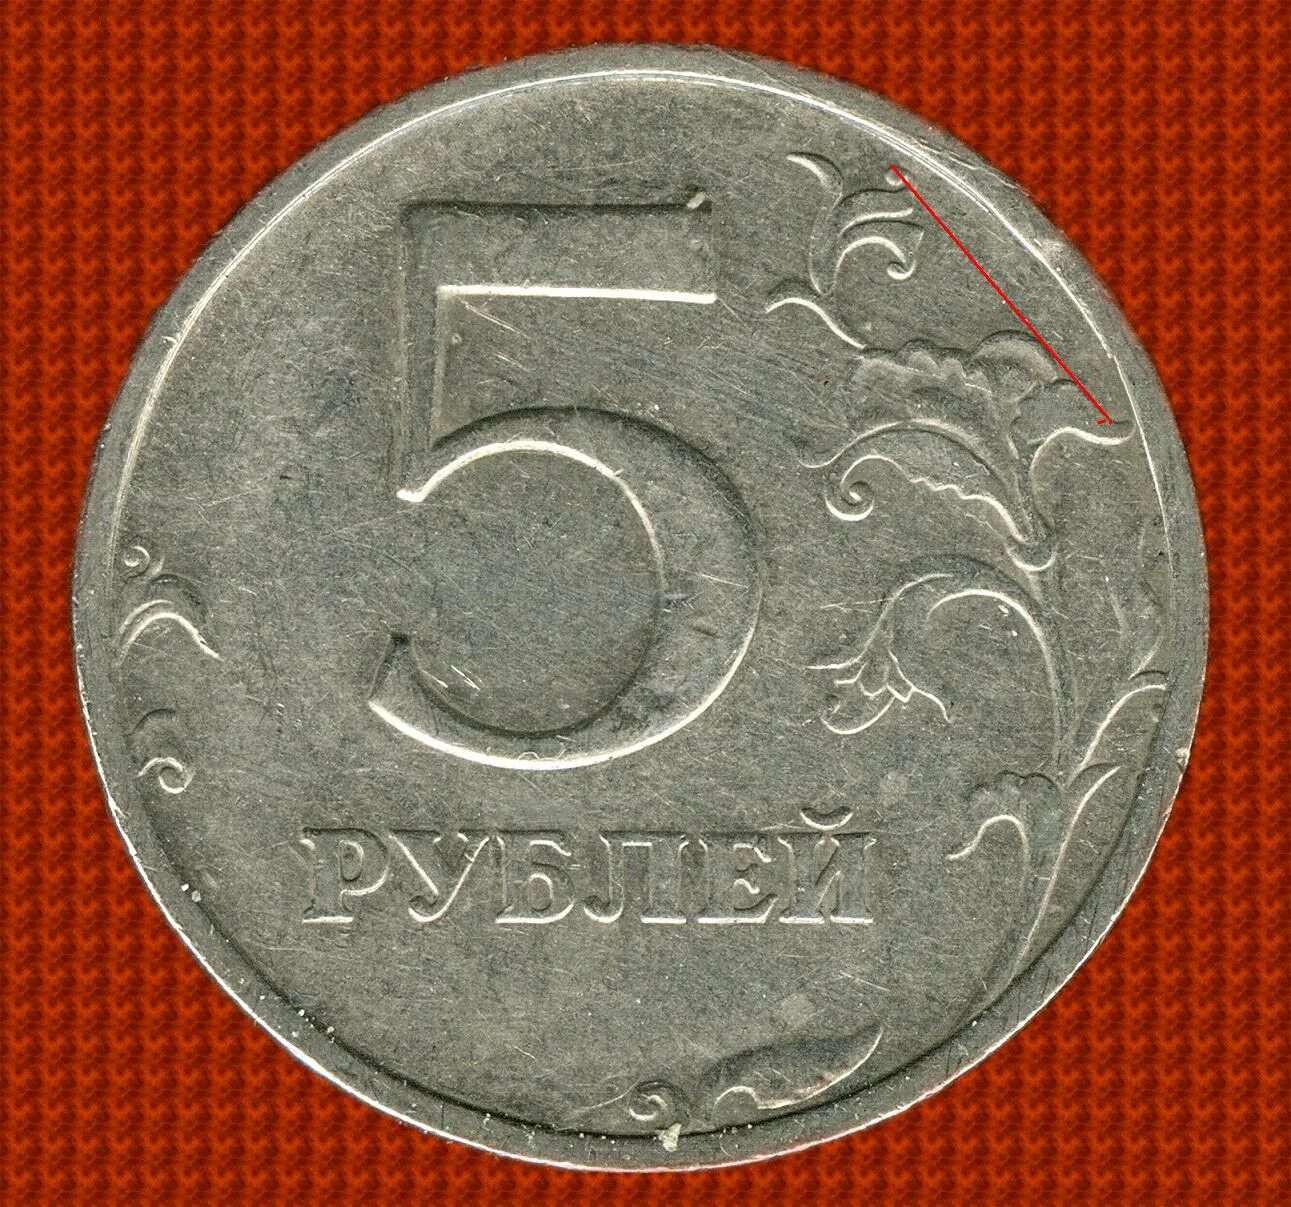 48 5 в рублях. 5 Рублей 1998 ММД. 5 Рублей 1998 СПМД. 5 Рублей 1998 Московский монетный двор. Пять рублей.